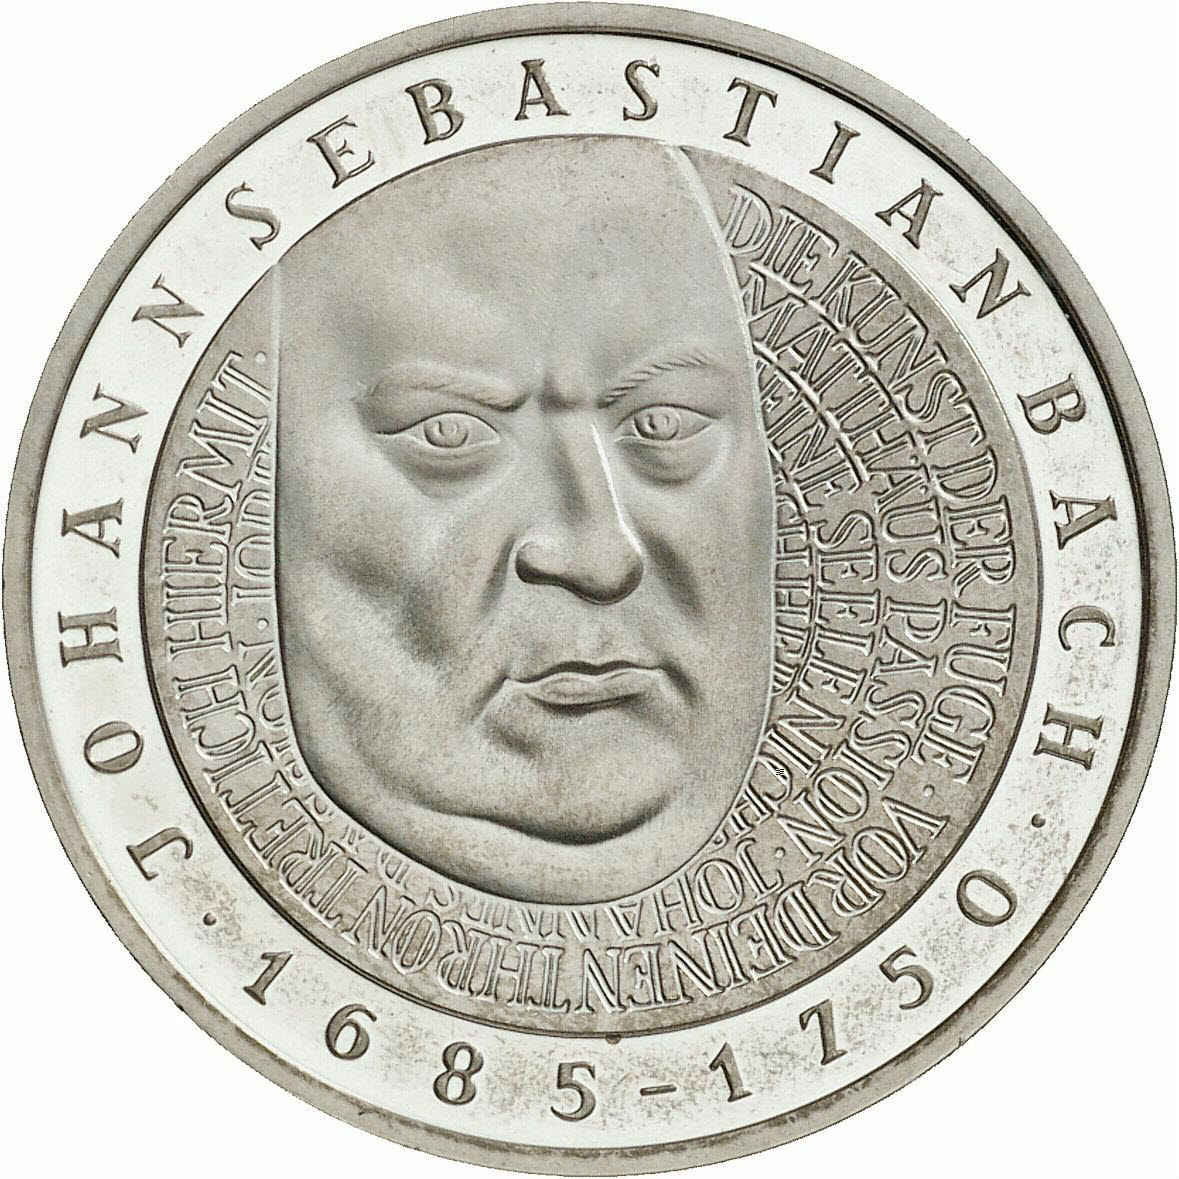 DE 10 Deutsche Mark 2000 J